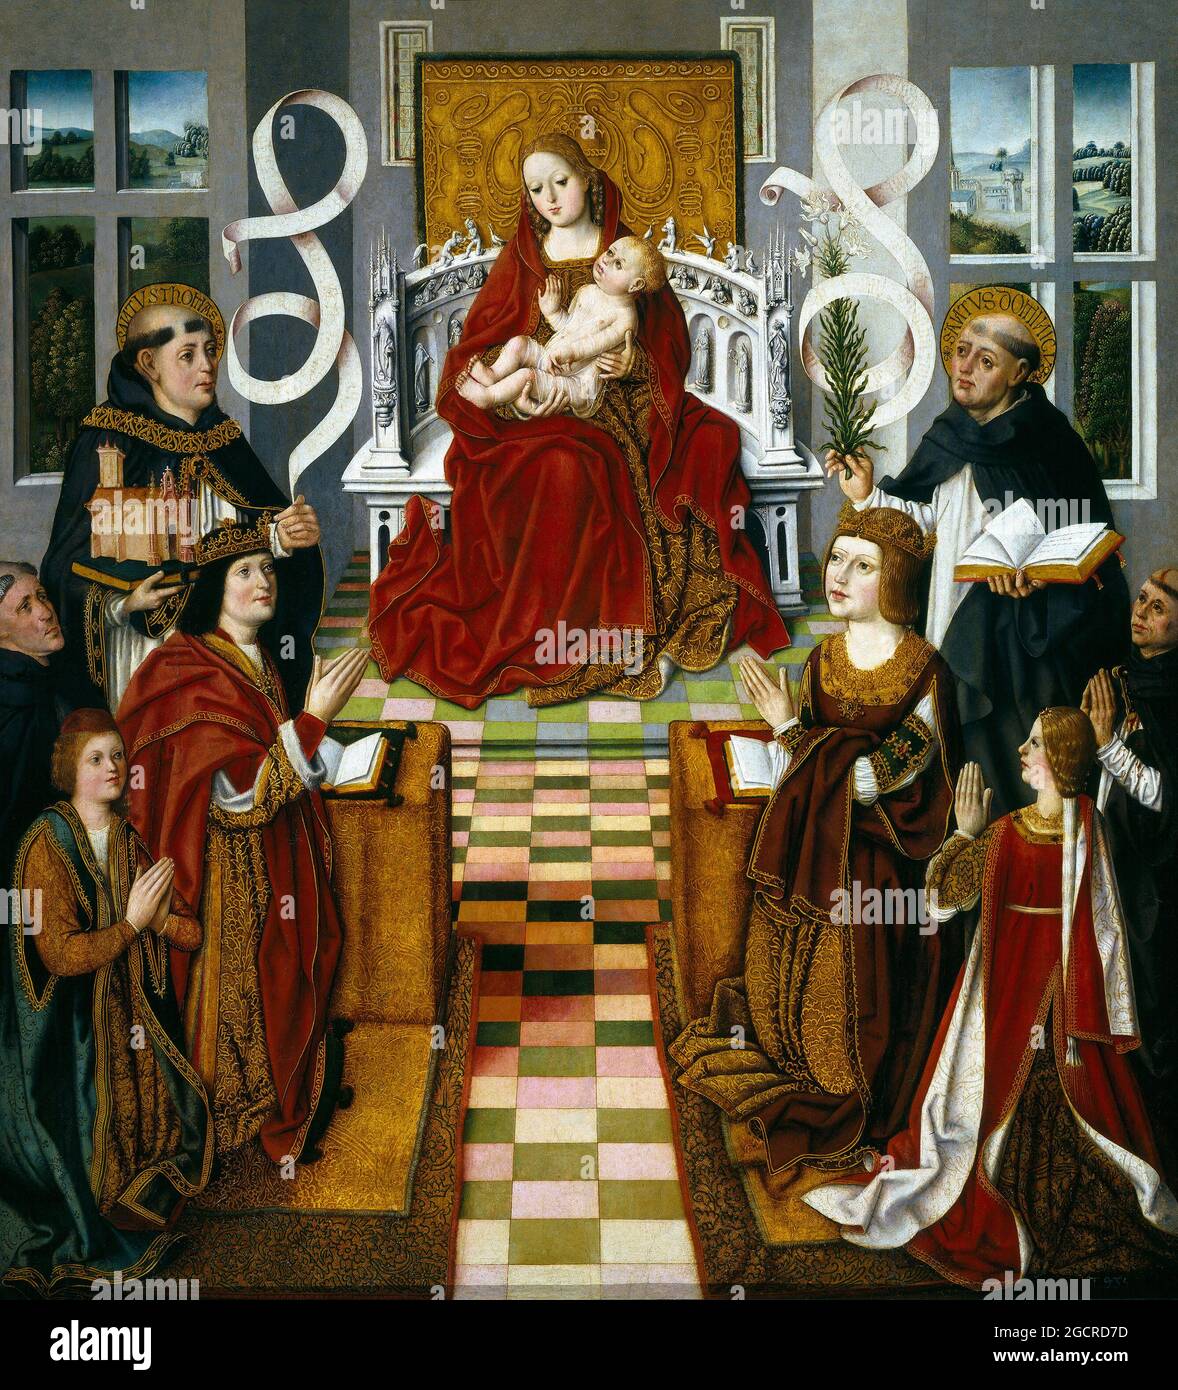 Spanien: "Madonna der Katholischen Könige". Tempera auf Tafelbild von Fernando Gallego (1440-1507) von Isabella I. von Kastilien, c. 1490. Isabella I. (spanisch: Isabel I., Ysabel, als Elisabeth anglikiert) (22. April 1451 – 26. November 1504) war Königin von Kastilien und Leon. Sie und ihr Ehemann Ferdinand II von Aragon brachten Stabilität in beide Königreiche, die die Grundlage für die Vereinigung Spaniens wurde. Später legten die beiden unter ihrem Enkel Karl V., dem Heiligen Römischen Kaiser, den Grundstein für die politische Vereinigung Spaniens. Stockfoto